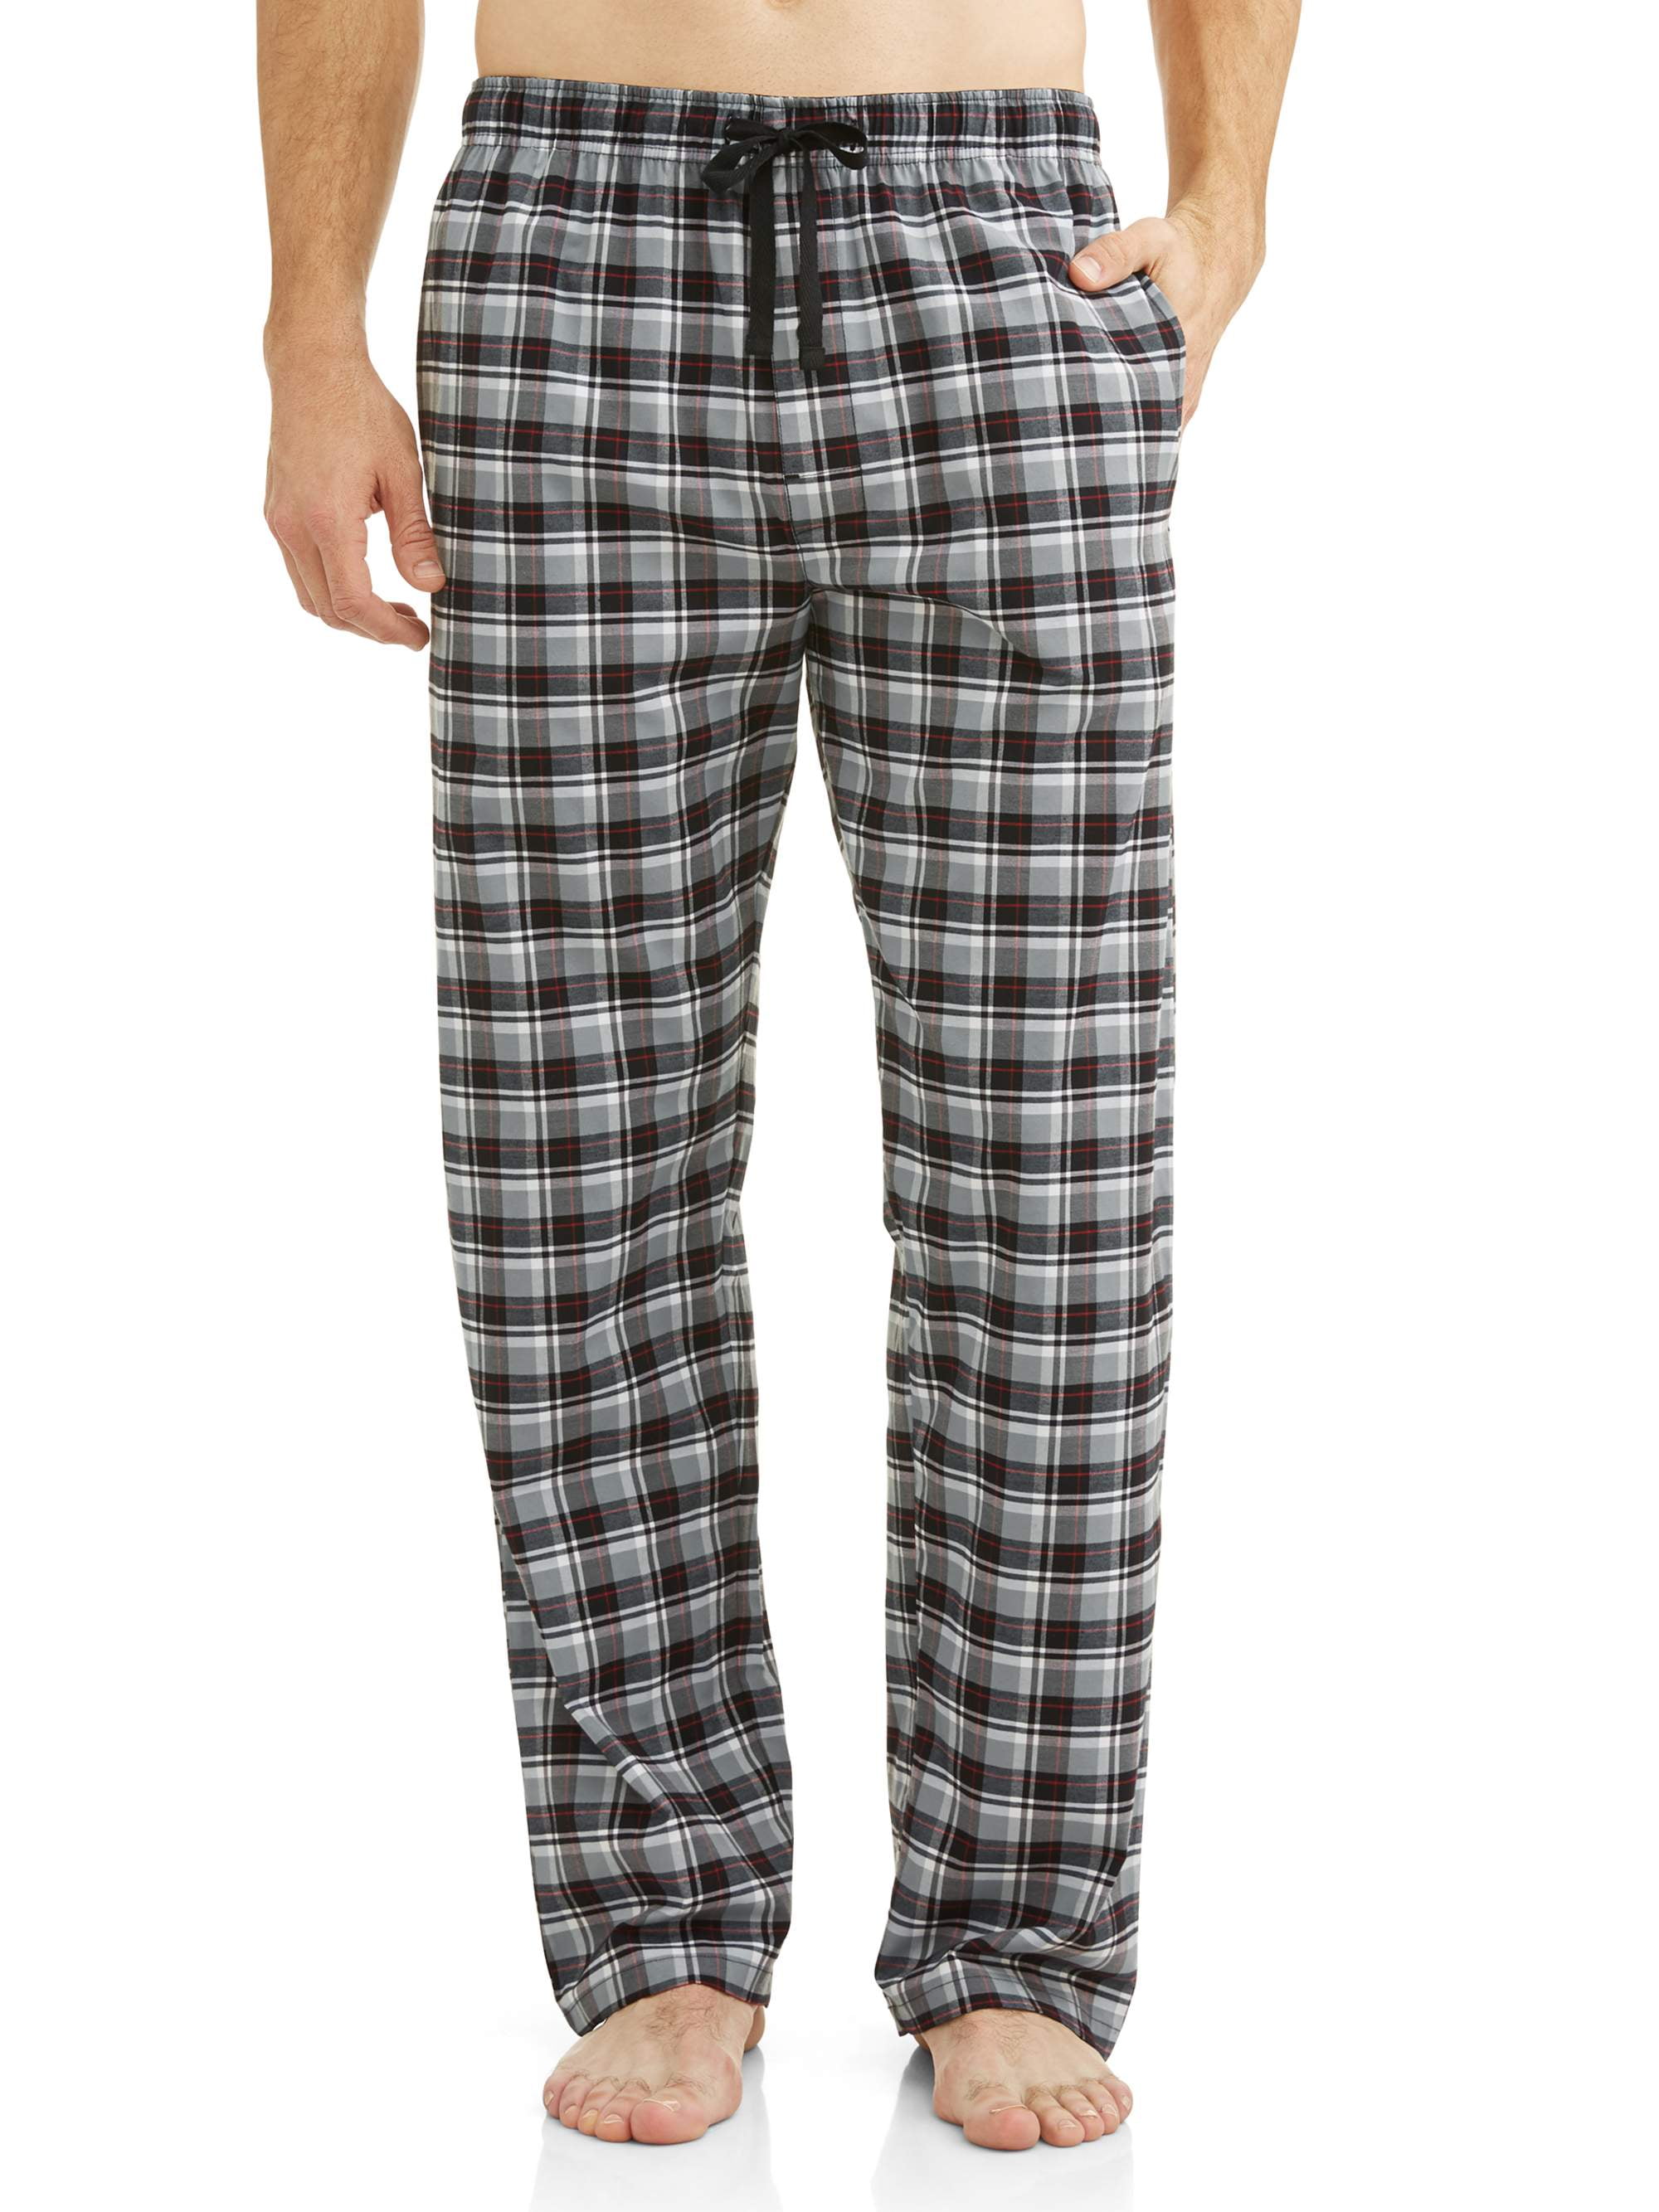 Hanes Men's and Big Men's Woven Stretch Pajama Pants - Walmart.com